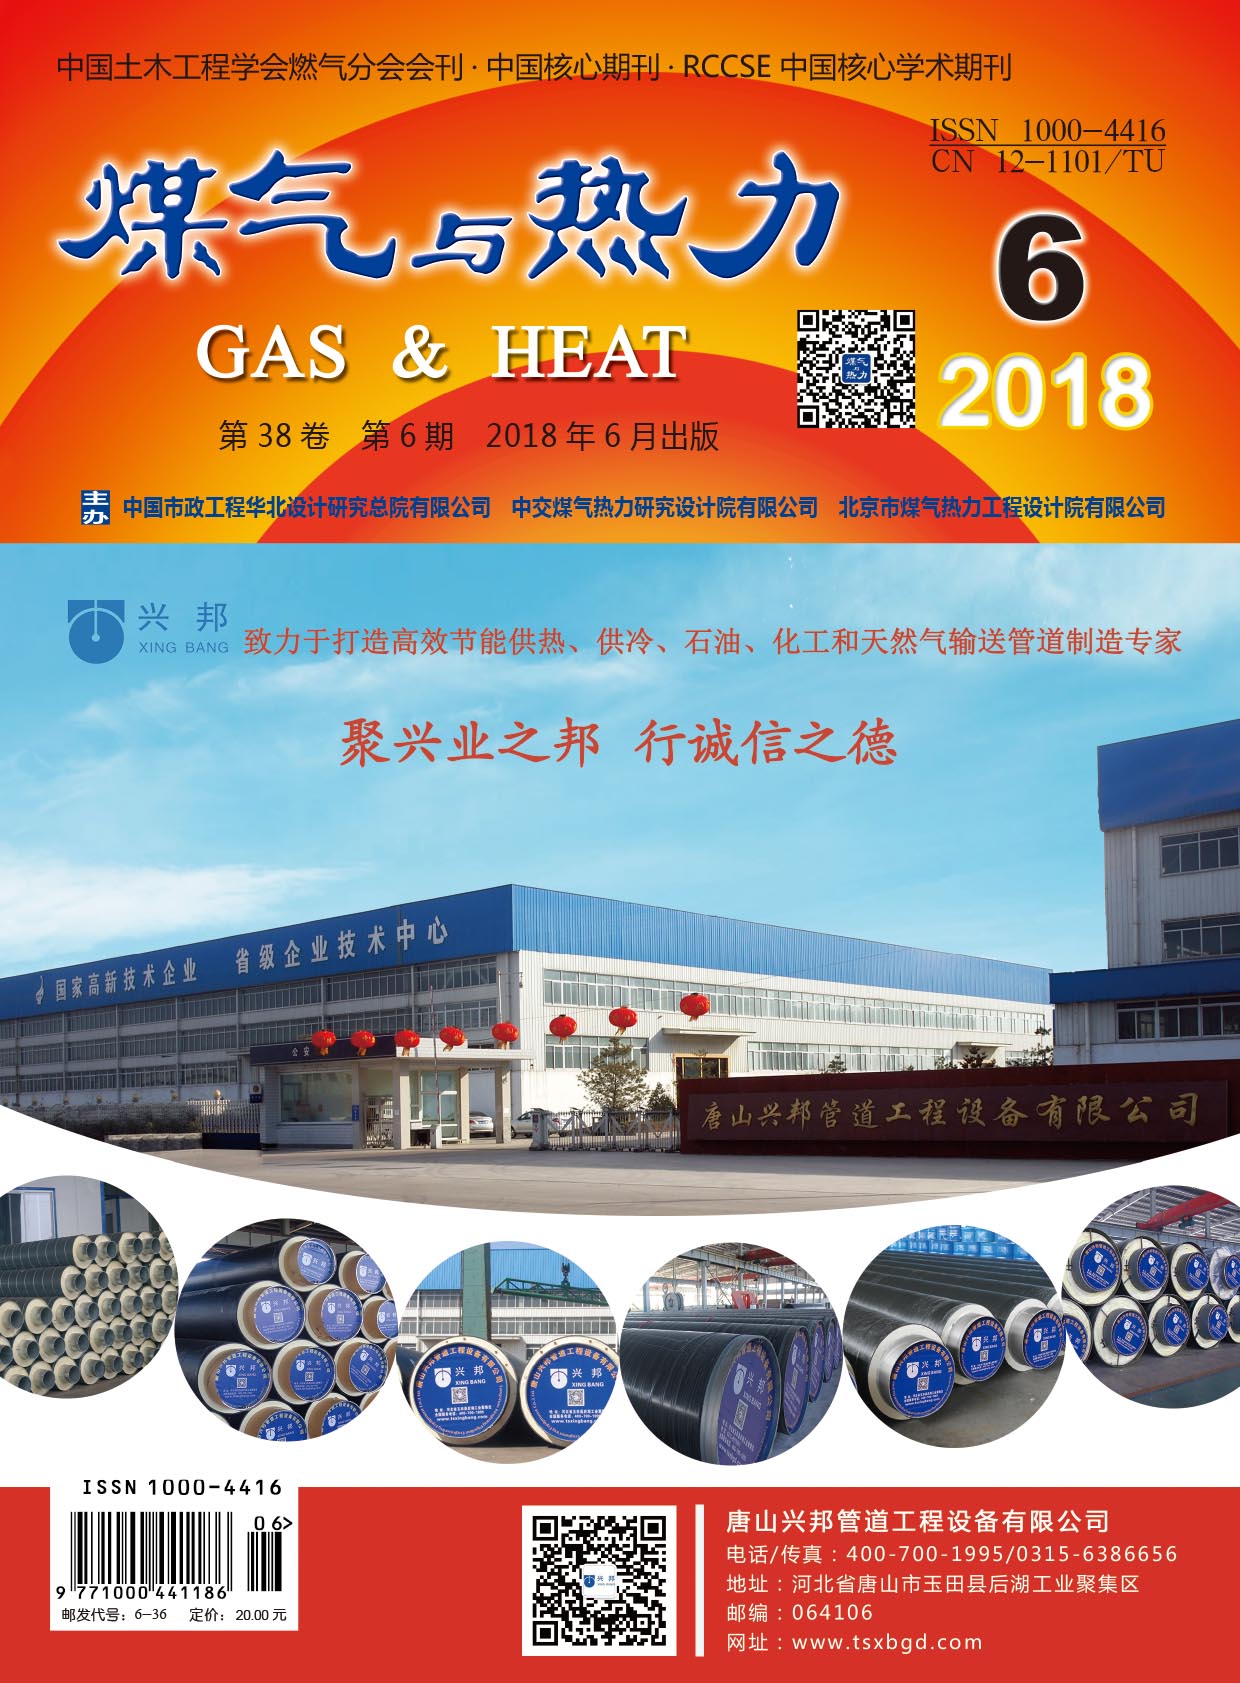 《煤气与热力》2018年6月刊